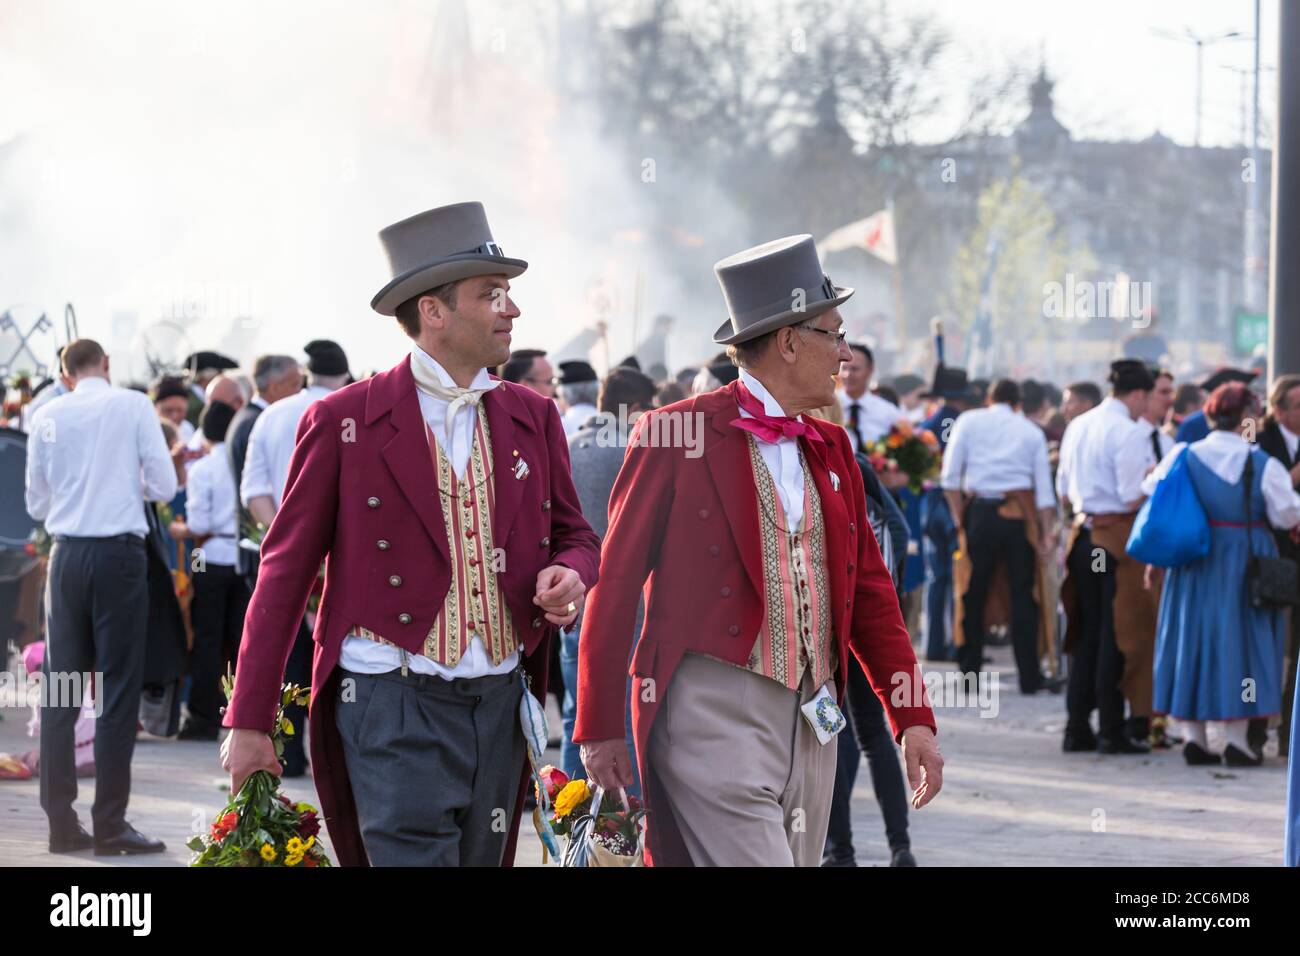 Zurigo, Svizzera - 13 aprile 2015 - uomini in costume tradizionale nella tradizionale sfilata primaverile delle Gilde (Sechselauten o Sachsiluute) AS Foto Stock